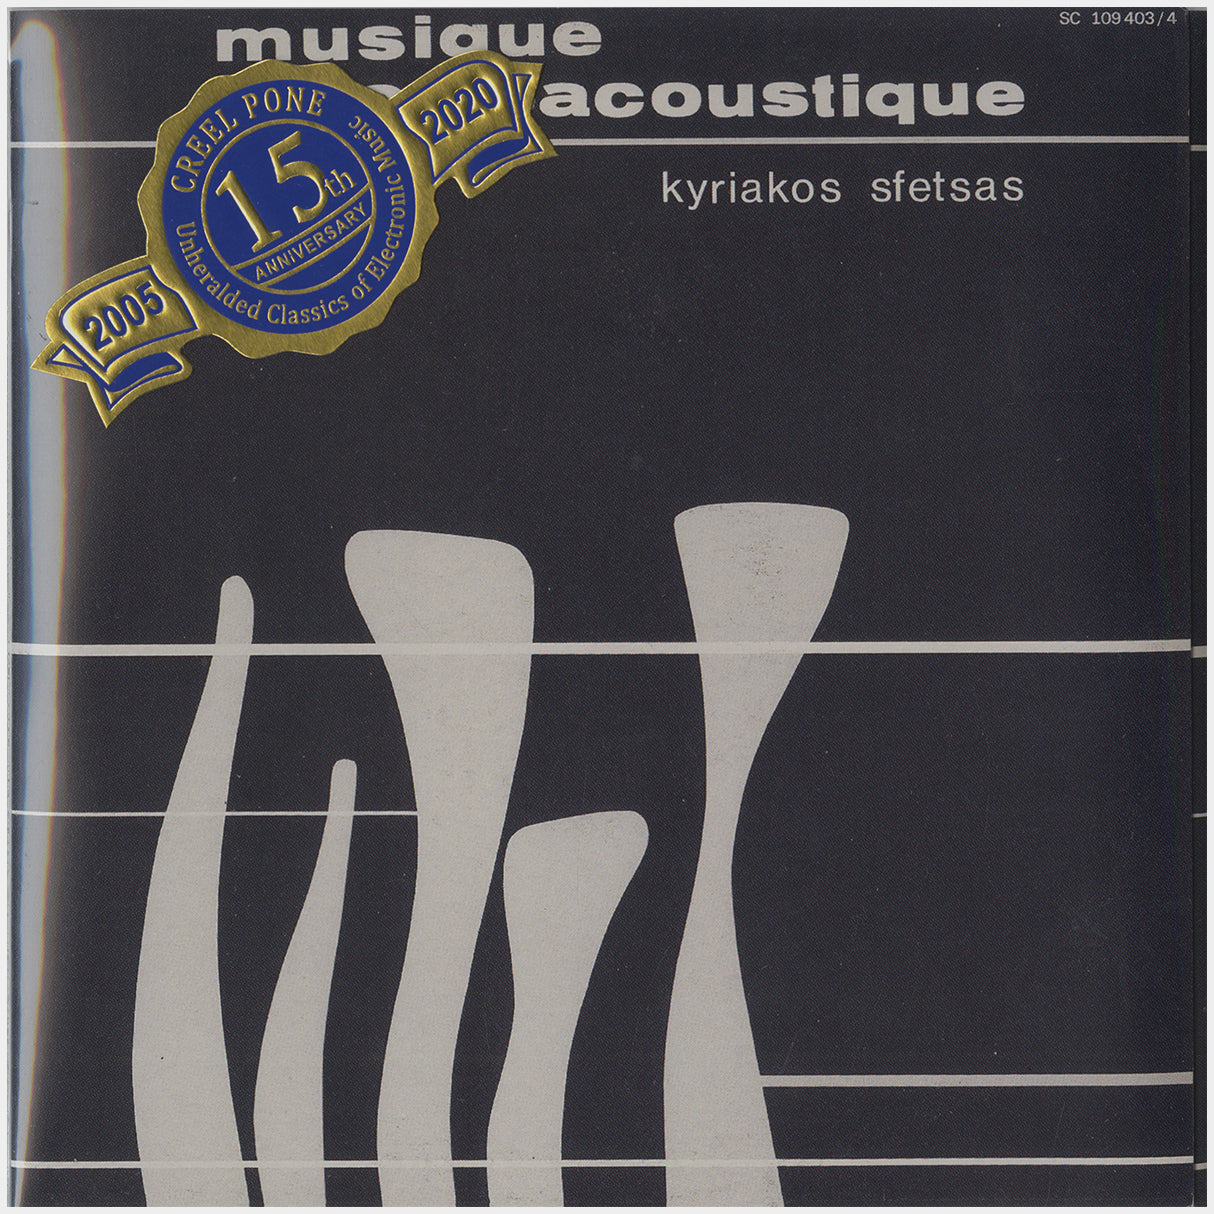 [CP 210-211 CD] Kyriakos Sfetsas; Smog, Musique Electroacoustique